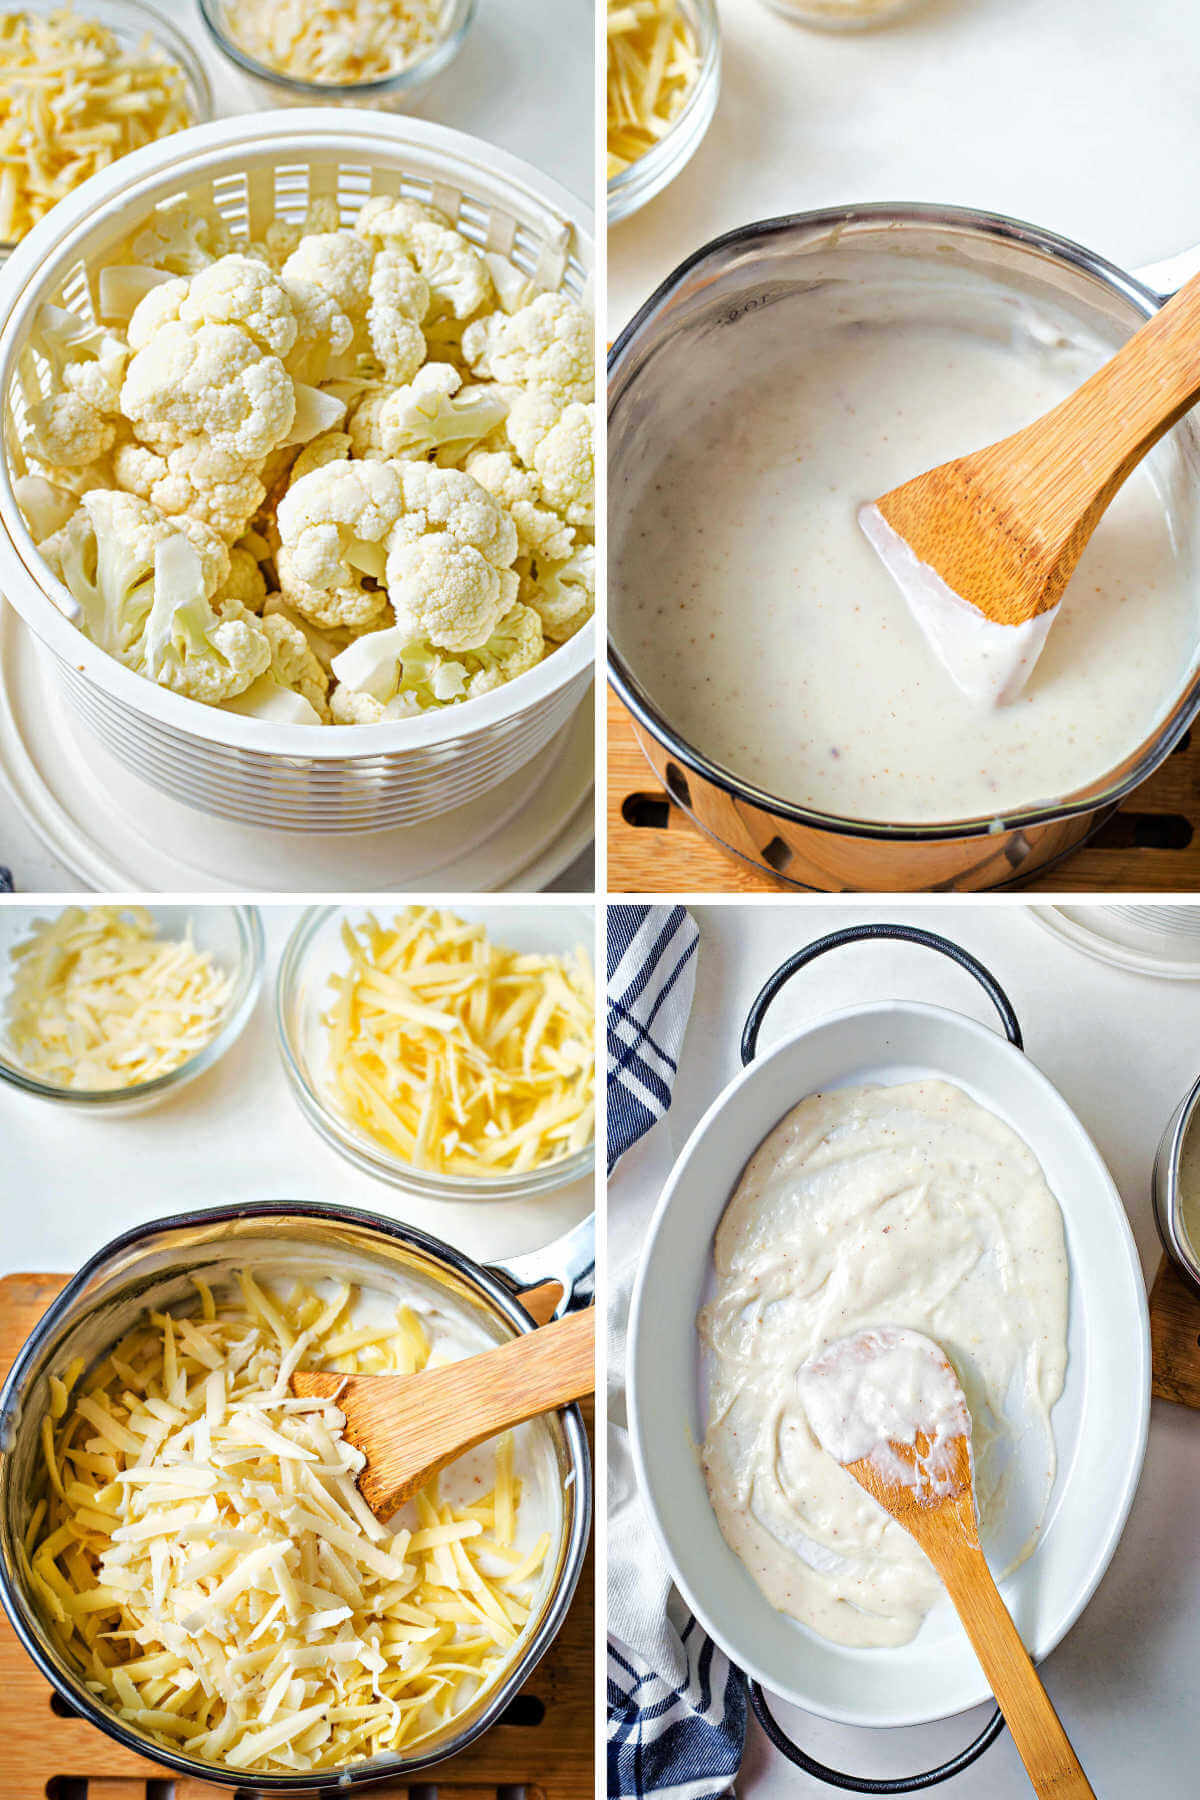 process steps for preparing cauliflower gratin: steam cauliflower florets; make white sauce; stir in cheeses.